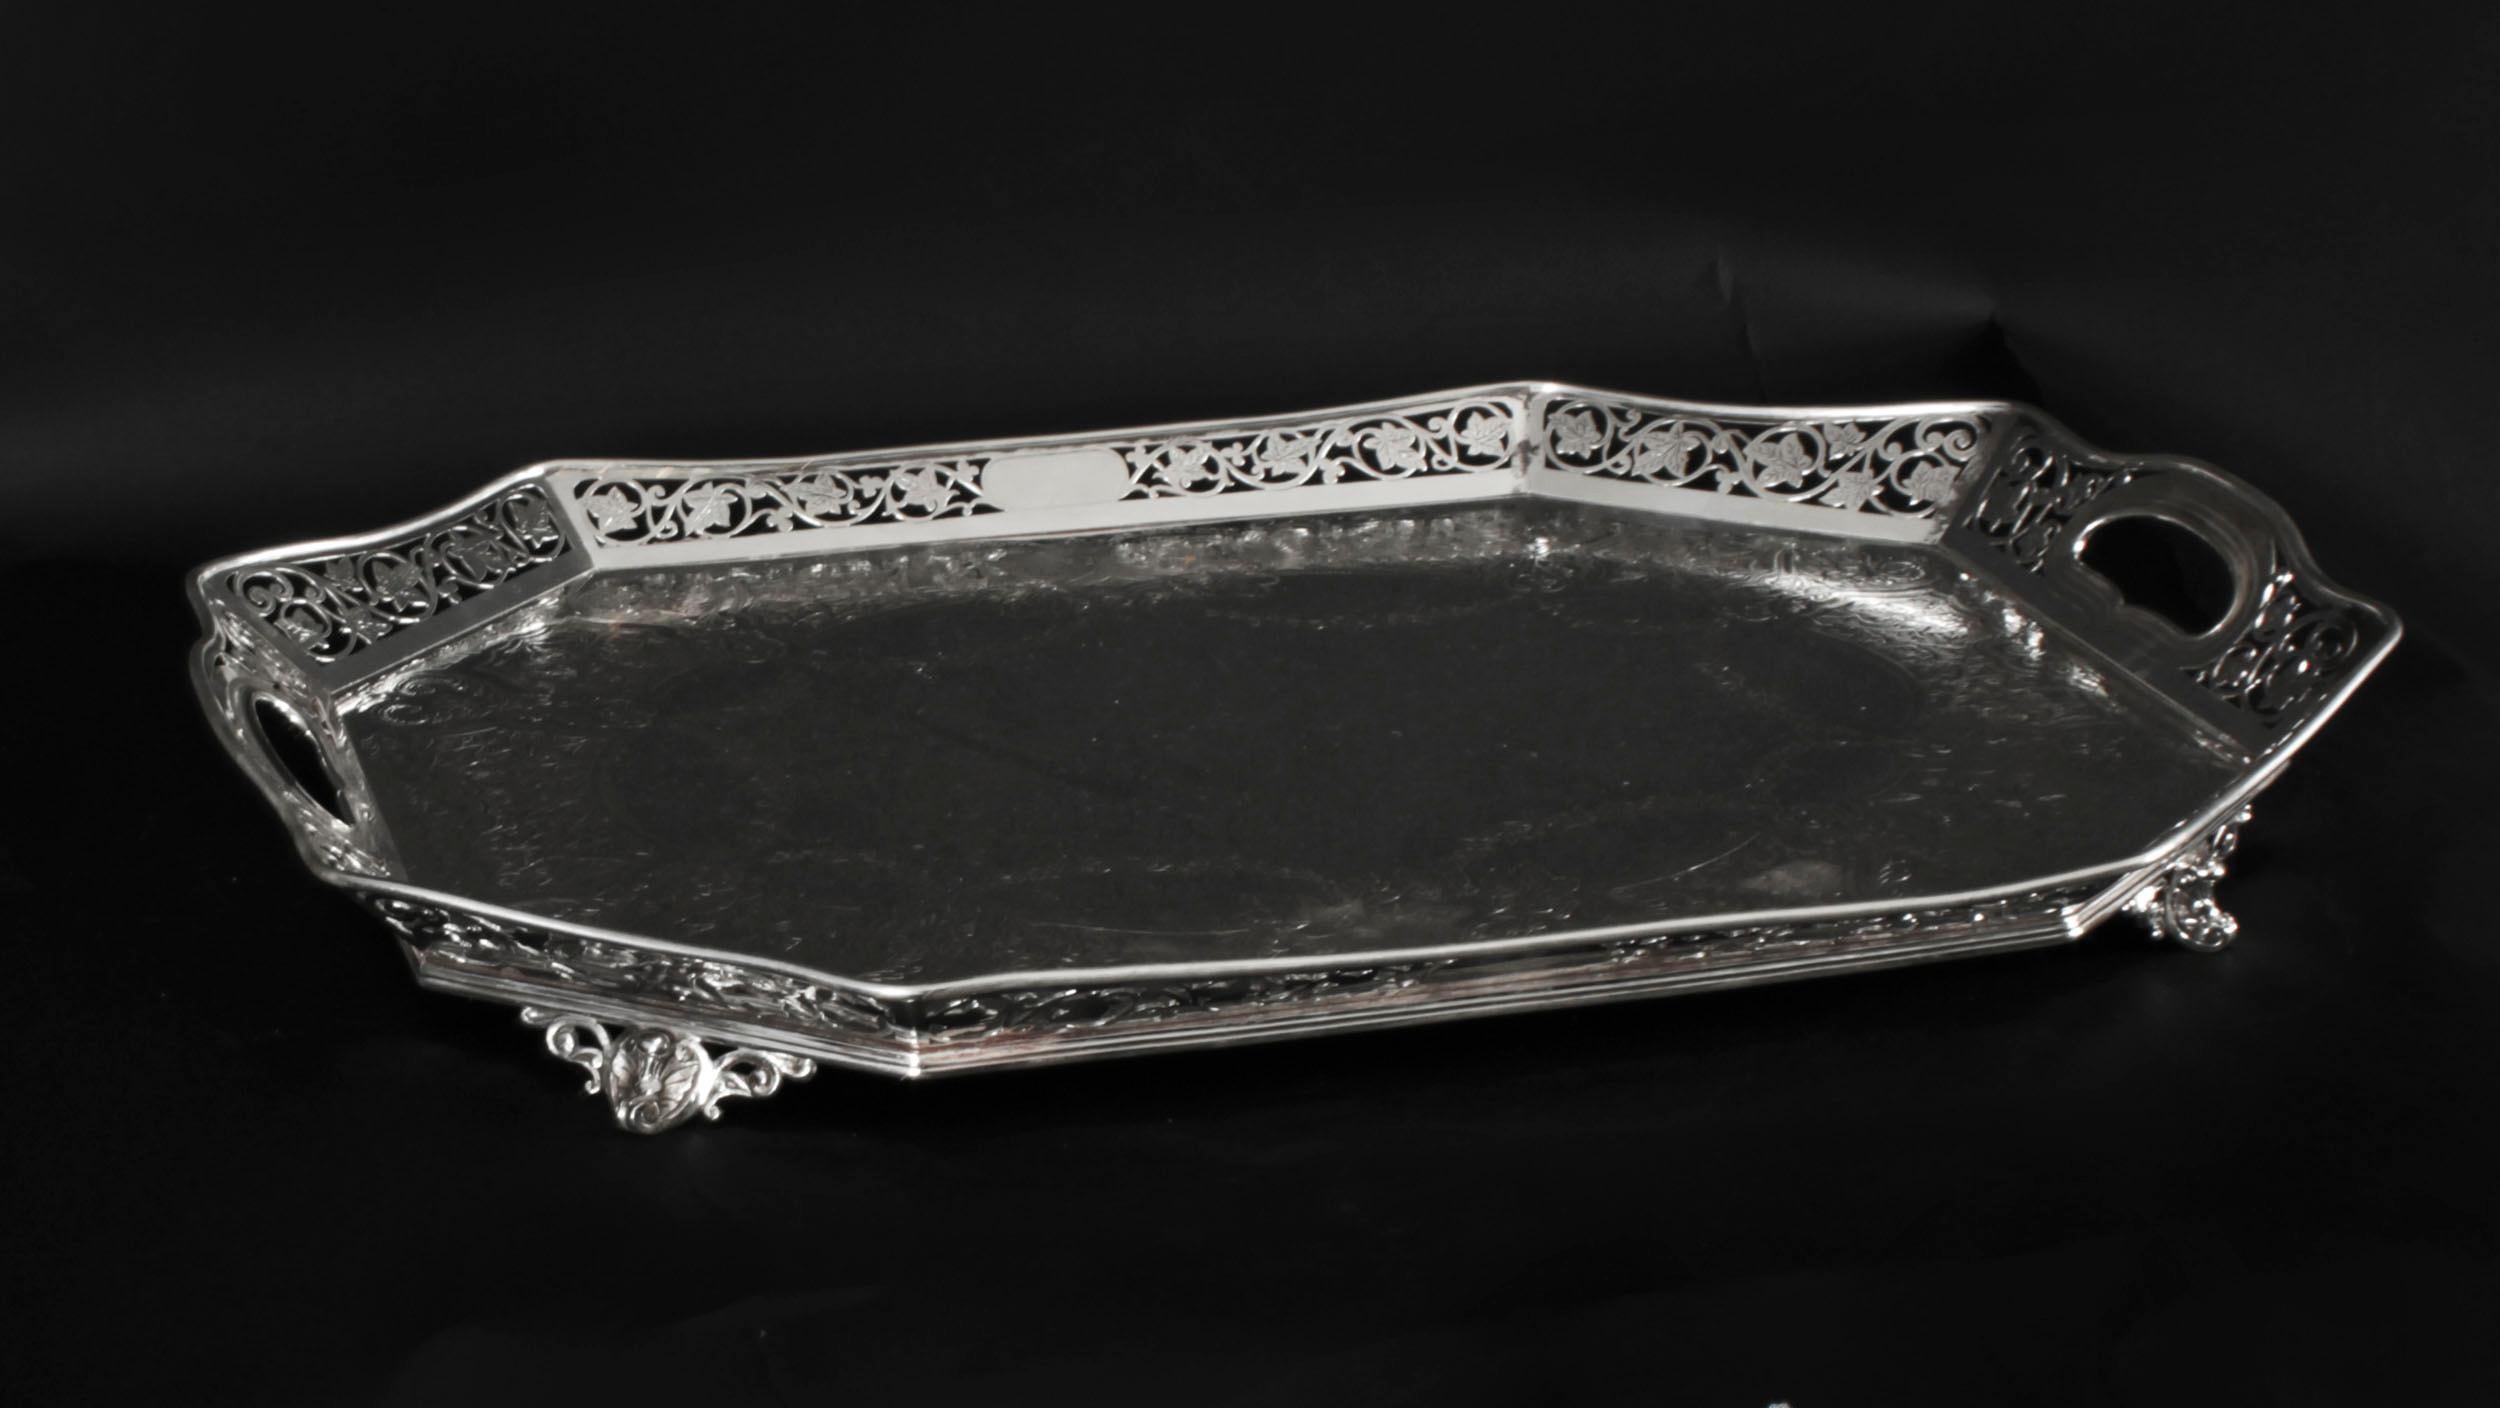 Dies ist eine schöne hervorragende Qualität antiken viktorianischen versilbert auf Kupfer Galerie Tablett  mit der Herstellermarke des bekannten Silberschmieds L&W für Lee & Wigfull, Sheffield, England, CIRCA 1880.
 
Das rechteckige Tablett hat